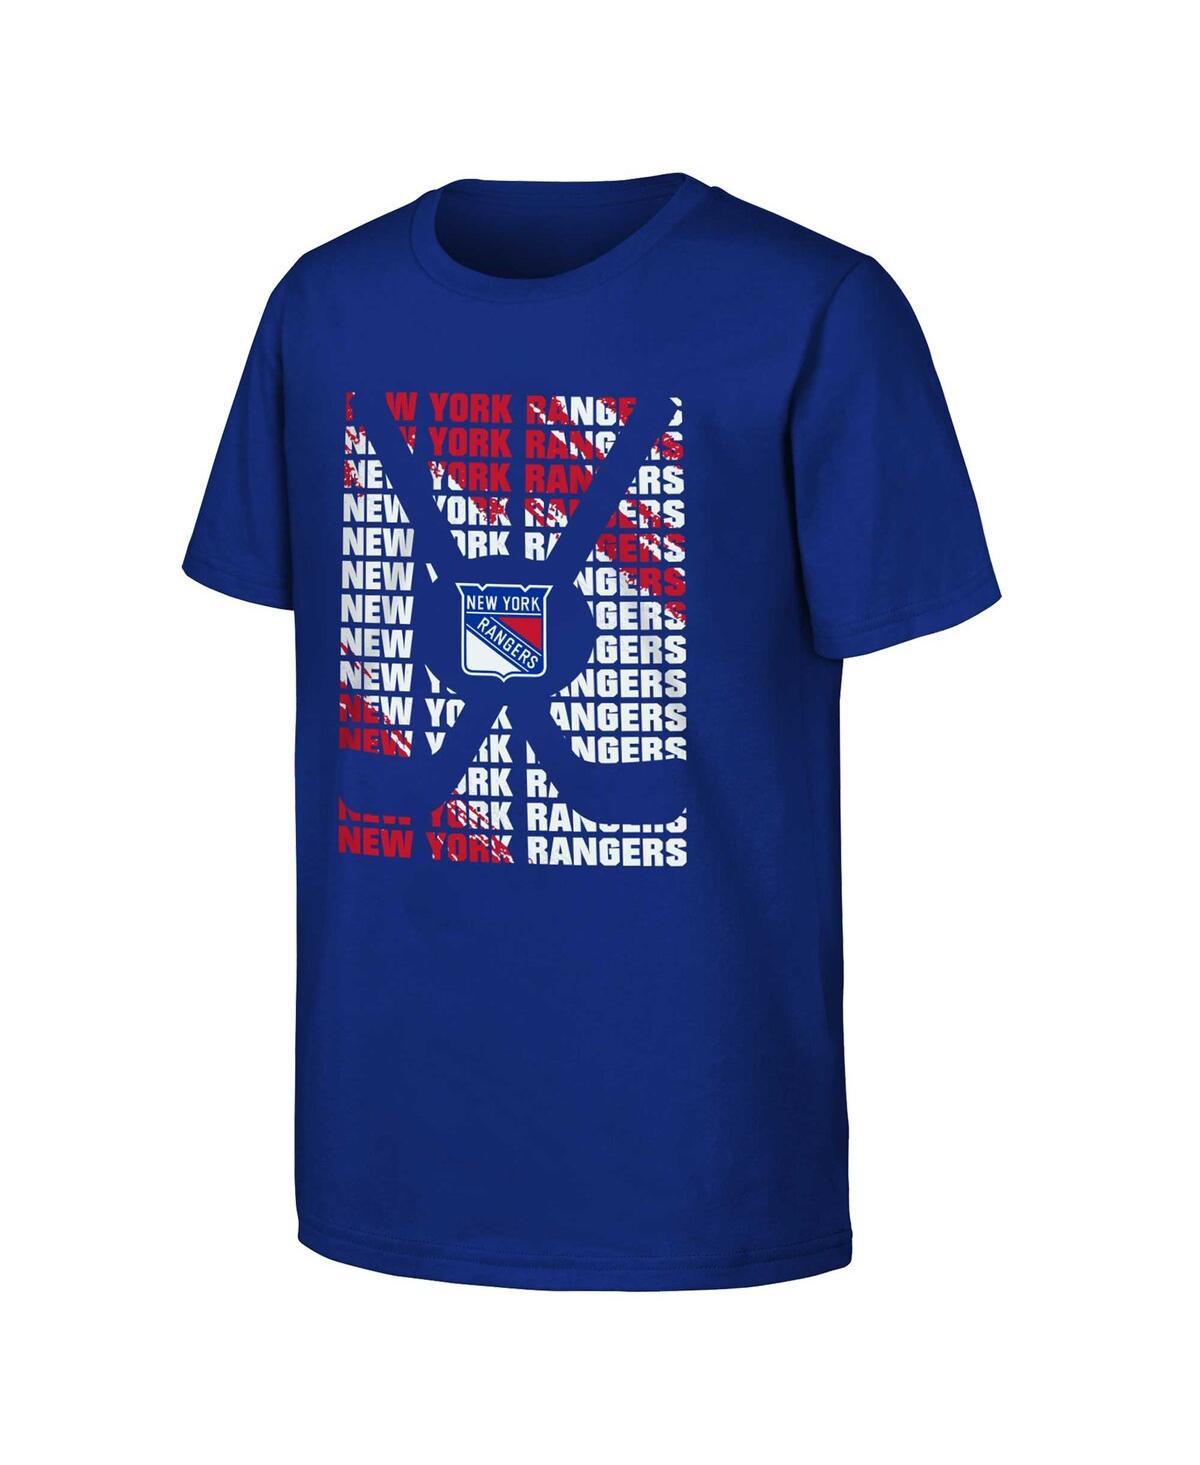 Outerstuff Kids' Big Boys And Girls Blue New York Rangers Box T-shirt